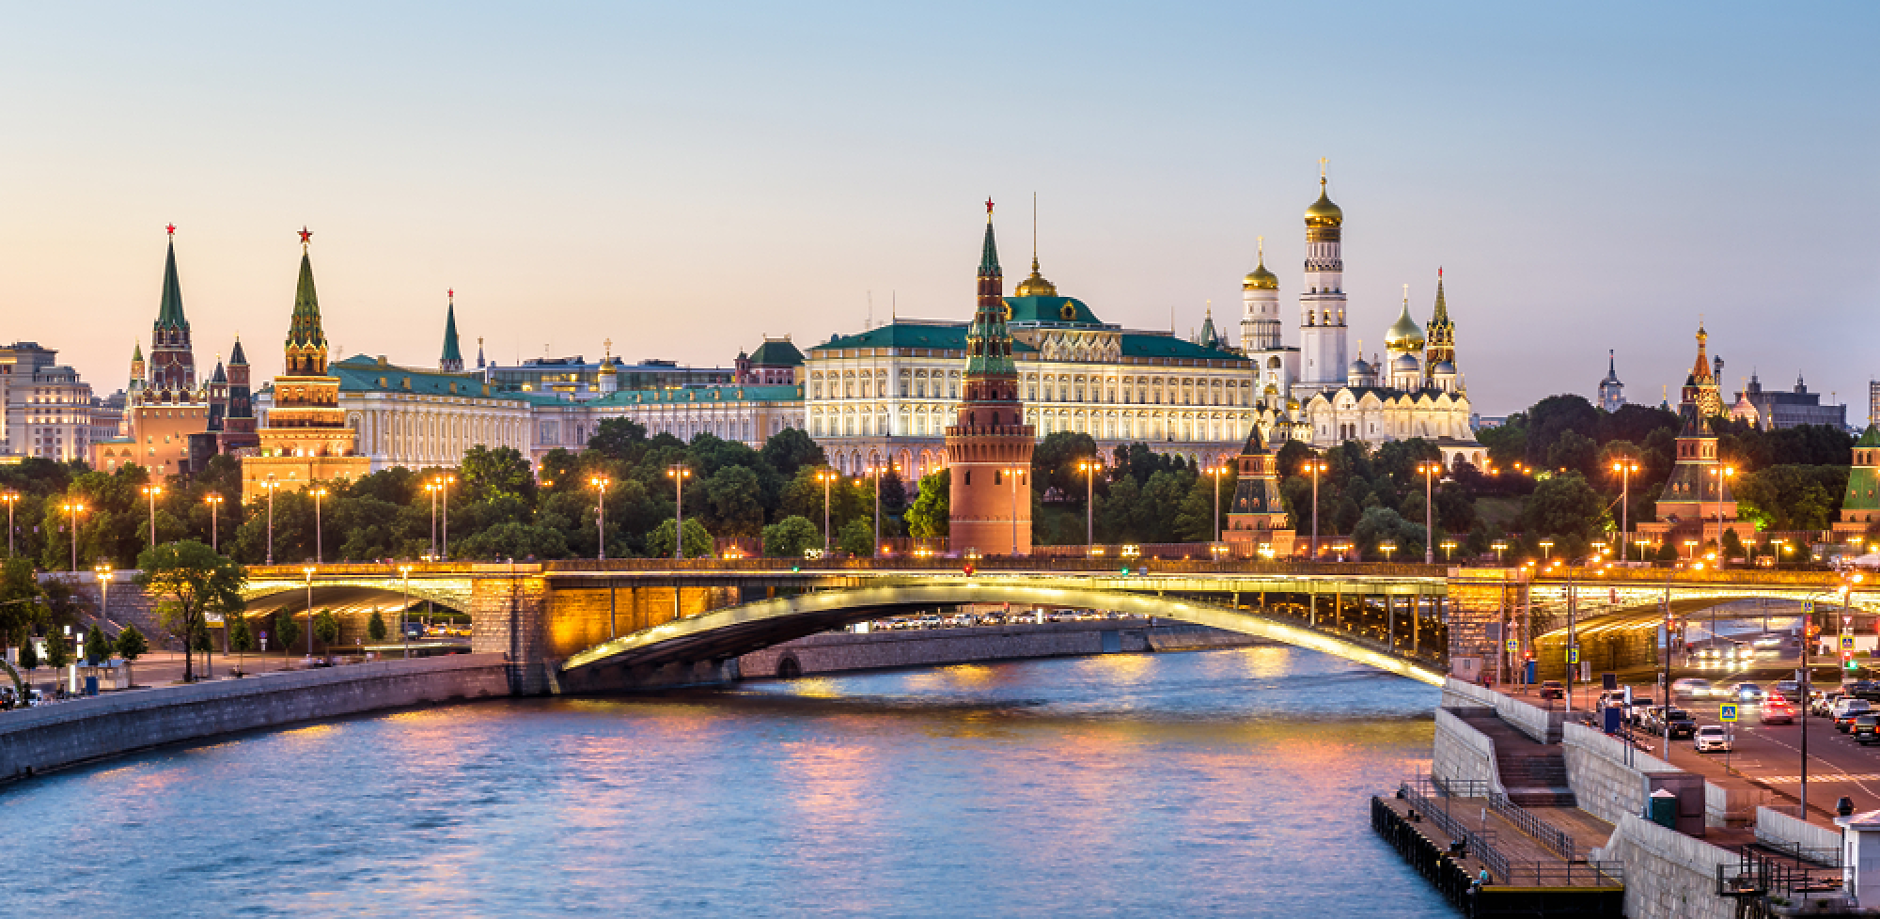  2000 чужди компании чакат разрешение от Москва за продажба на активи в Русия